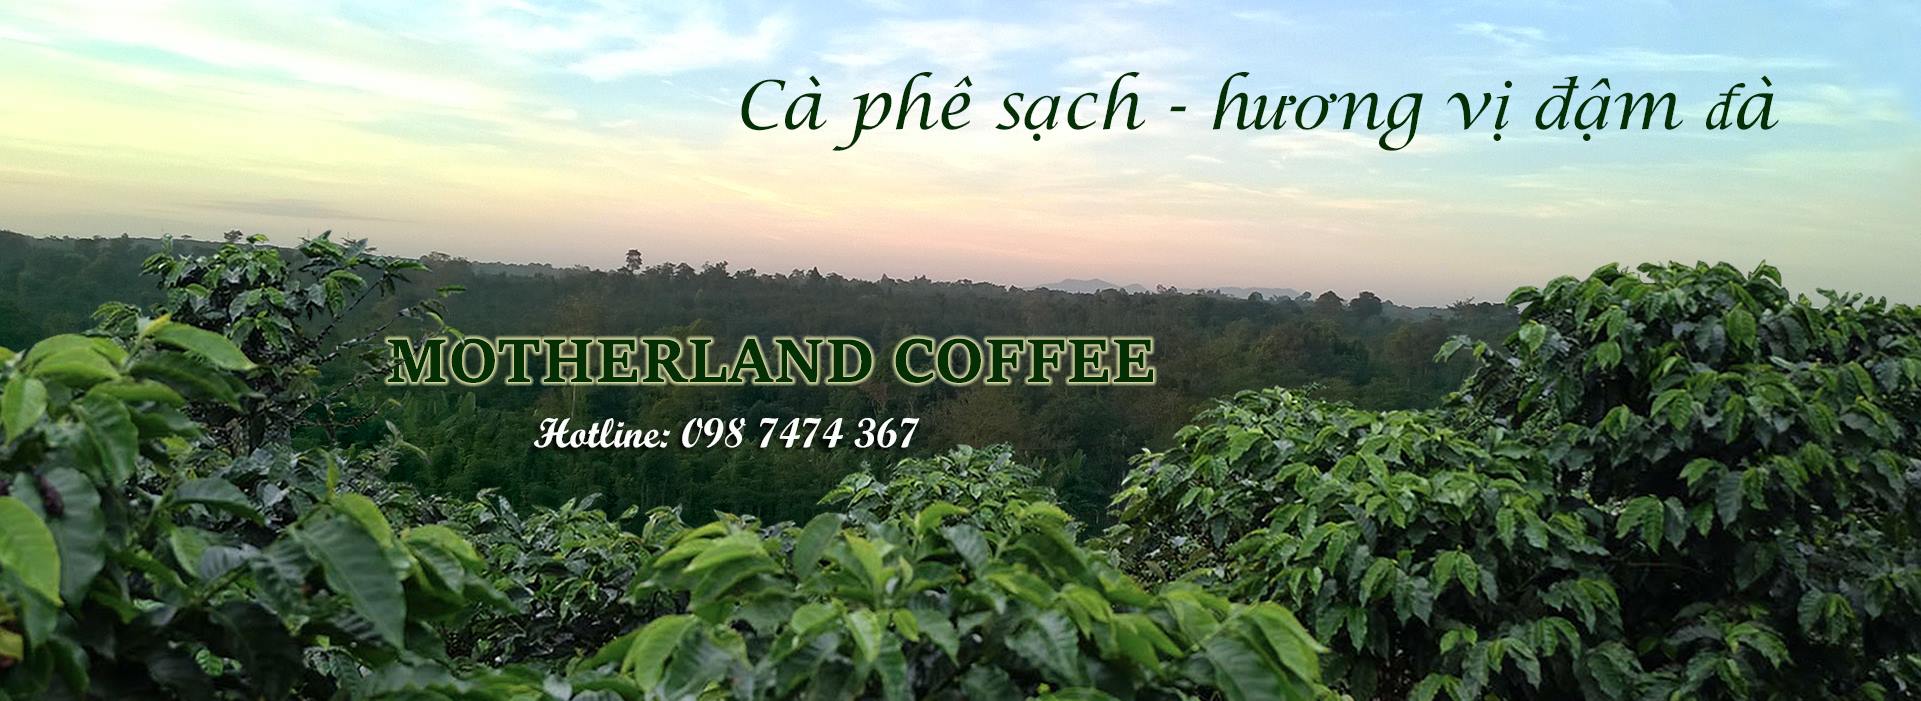 Motherland Coffee 